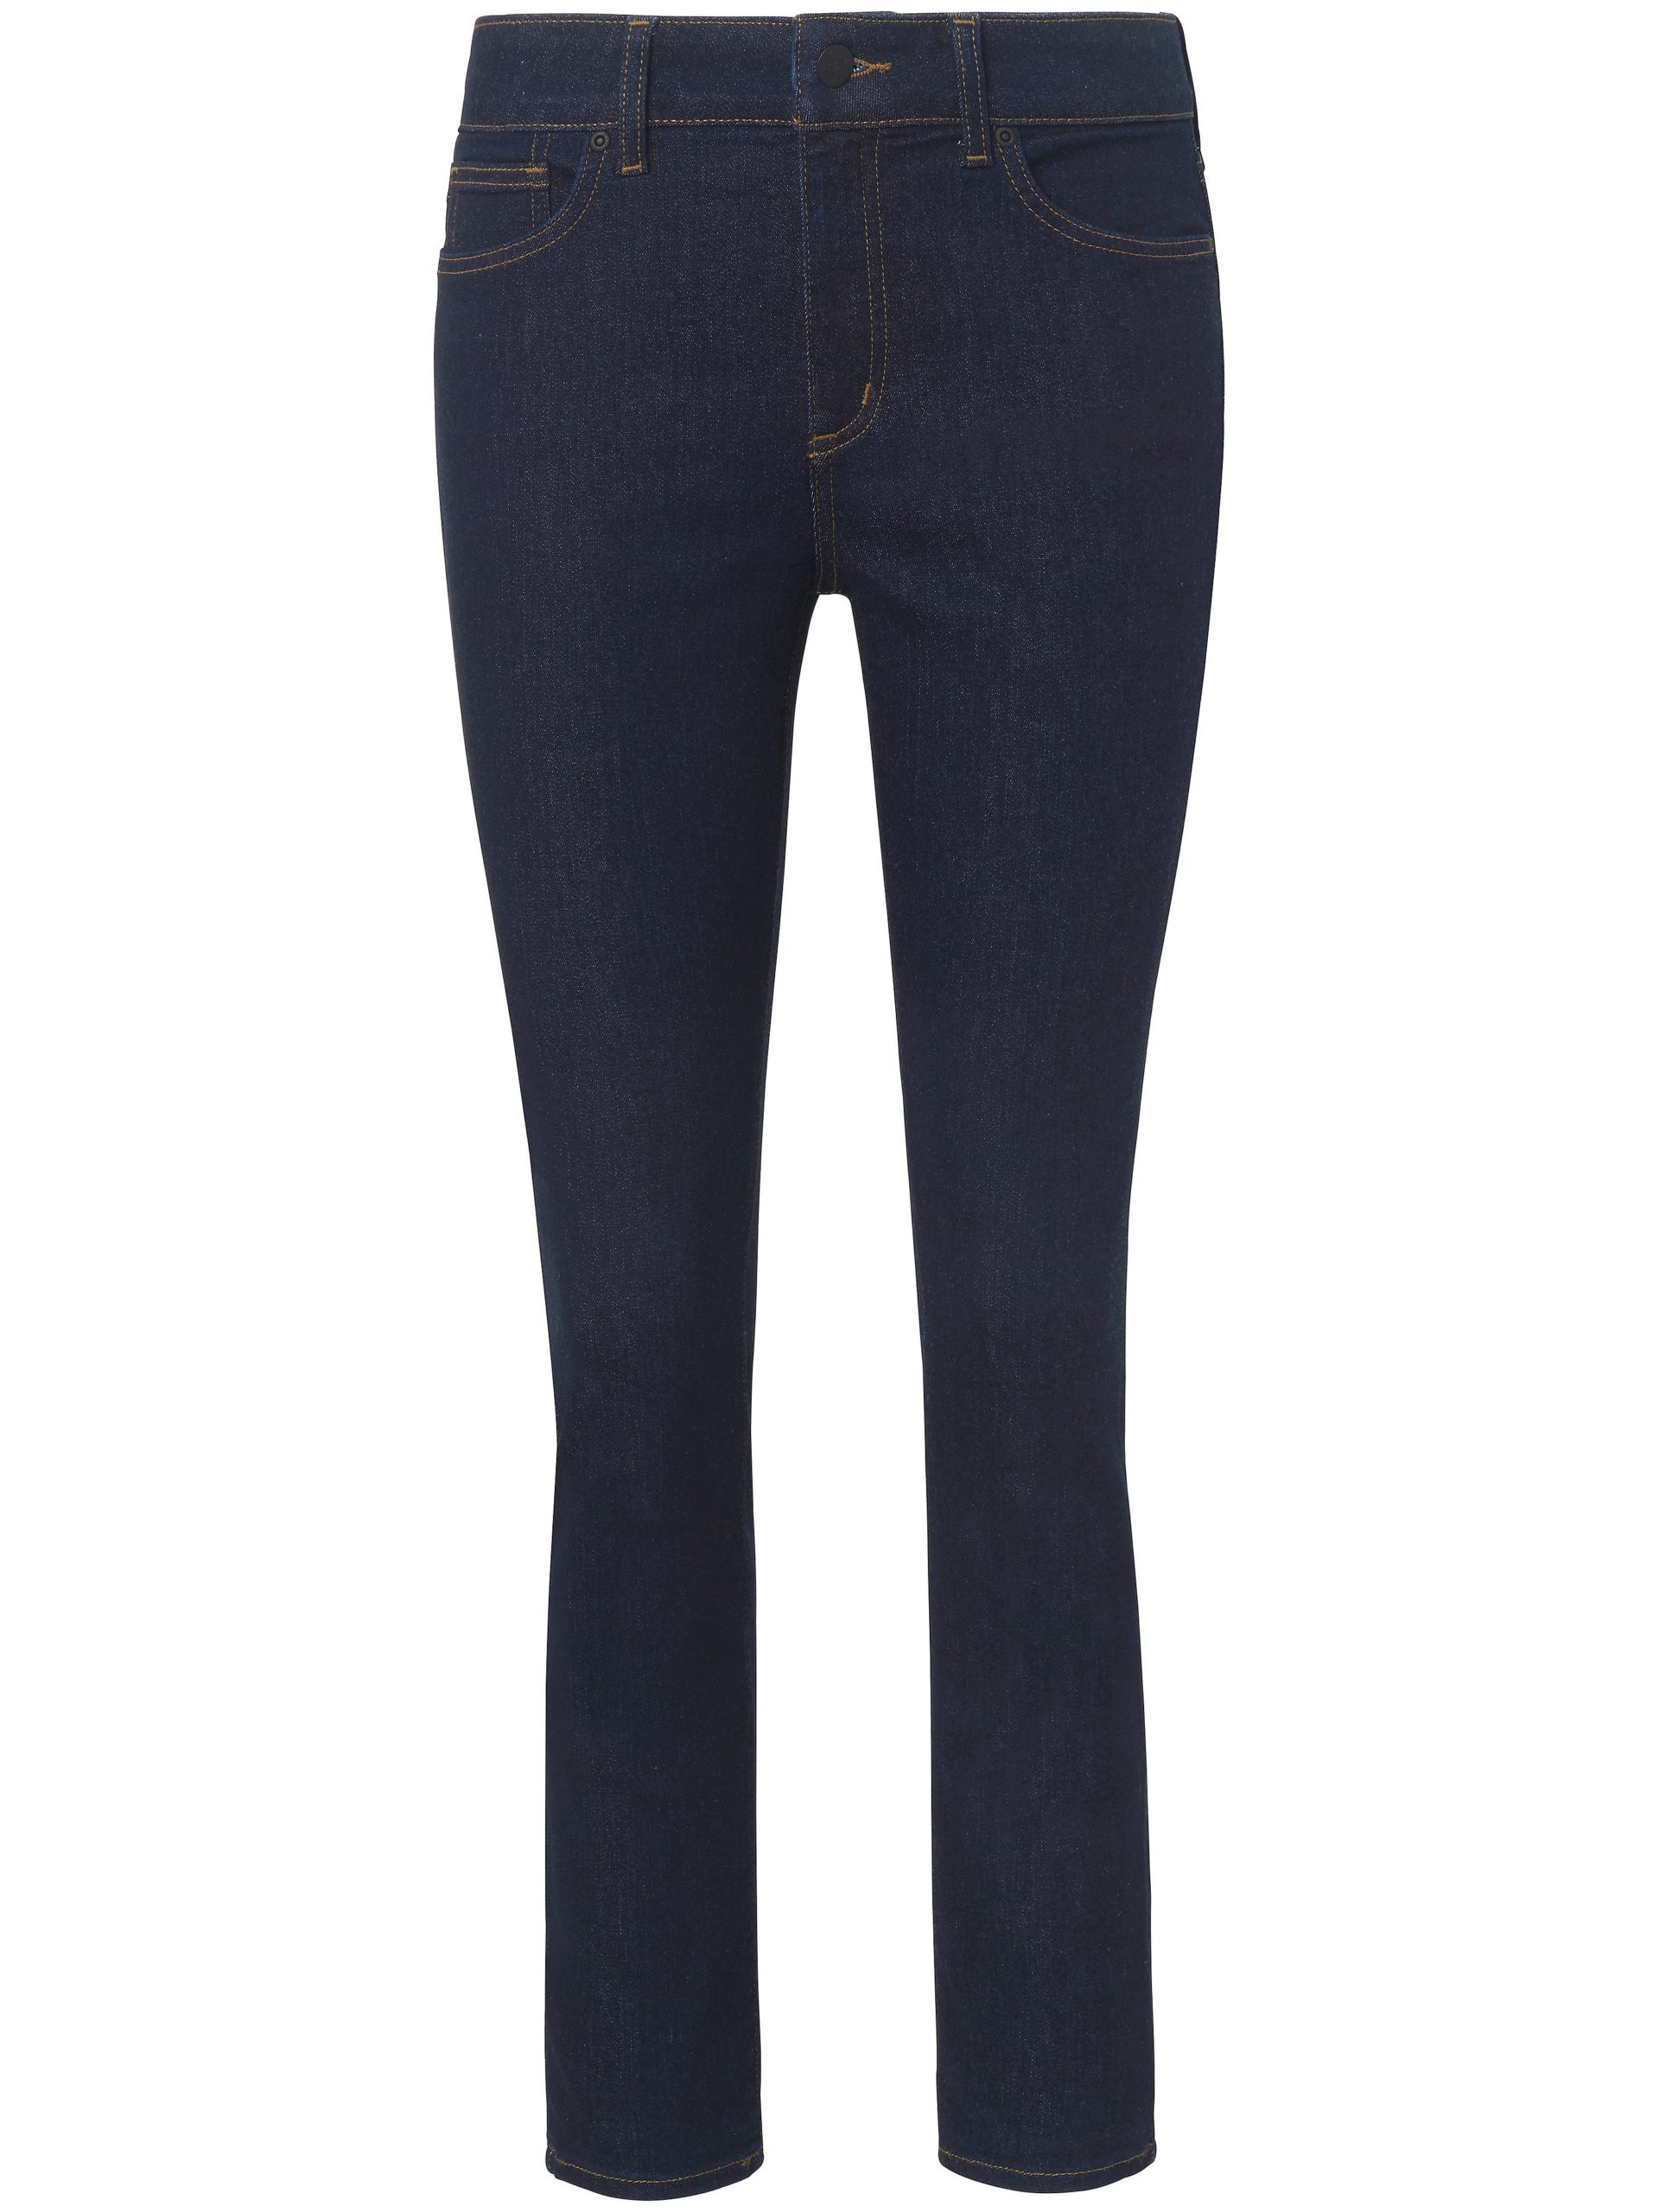 Jeans model Alina Ankle met enkellange pijpen Van NYDJ denim Kopen